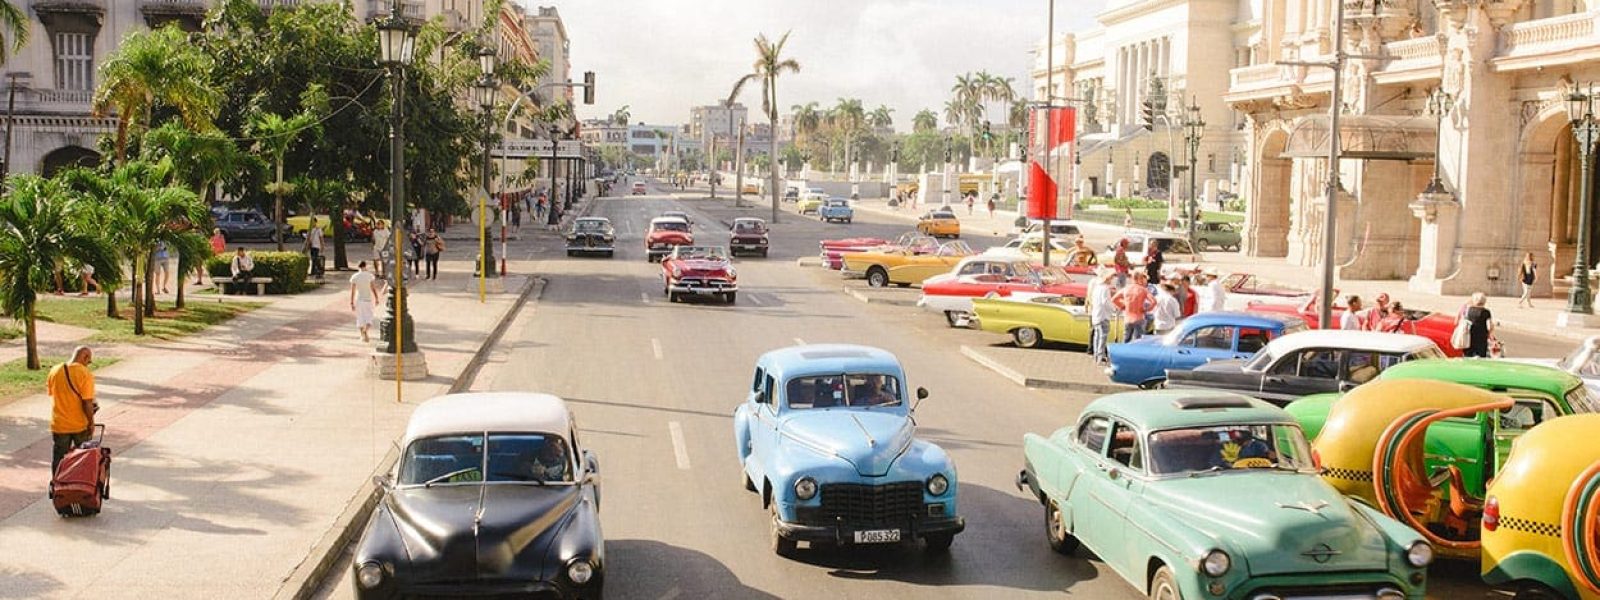 gekleurde autos op straat in cuba